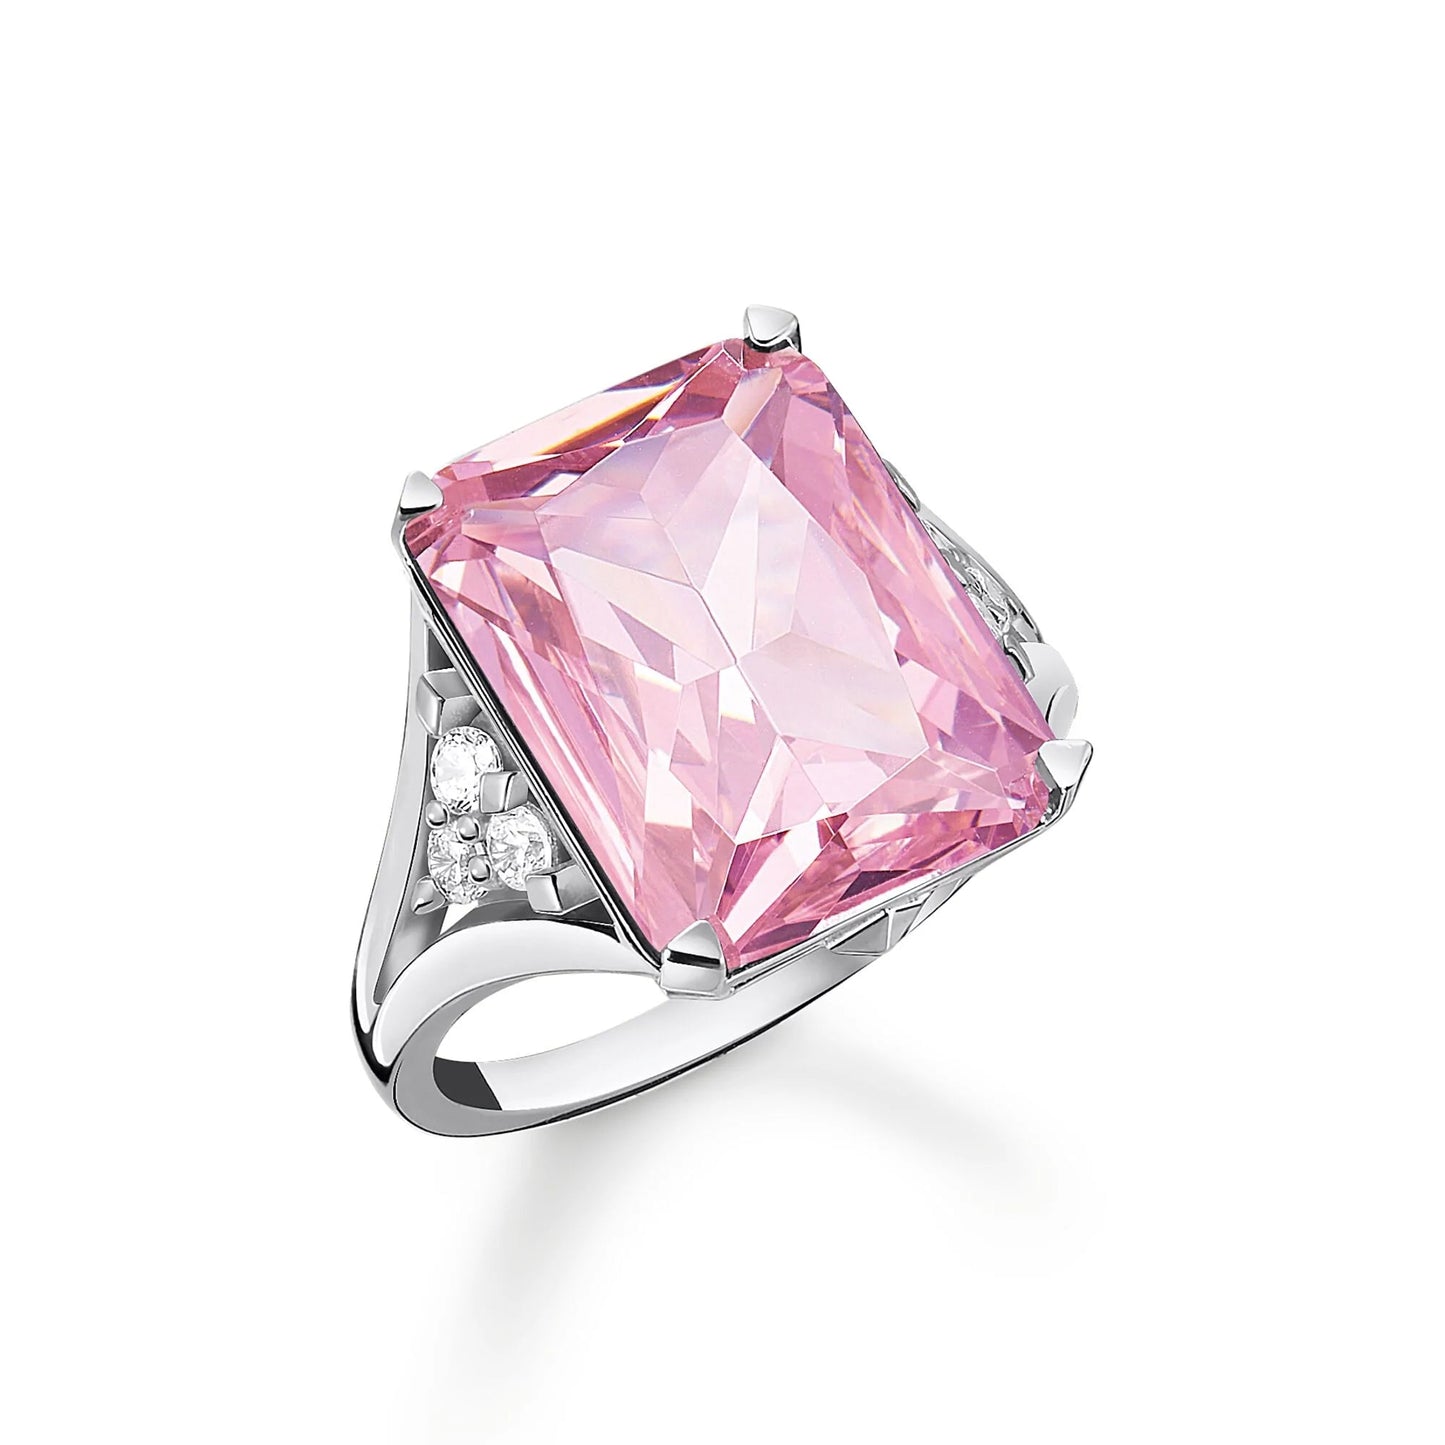 THOMAS SABO Heritage Pink Stone Silver Ring